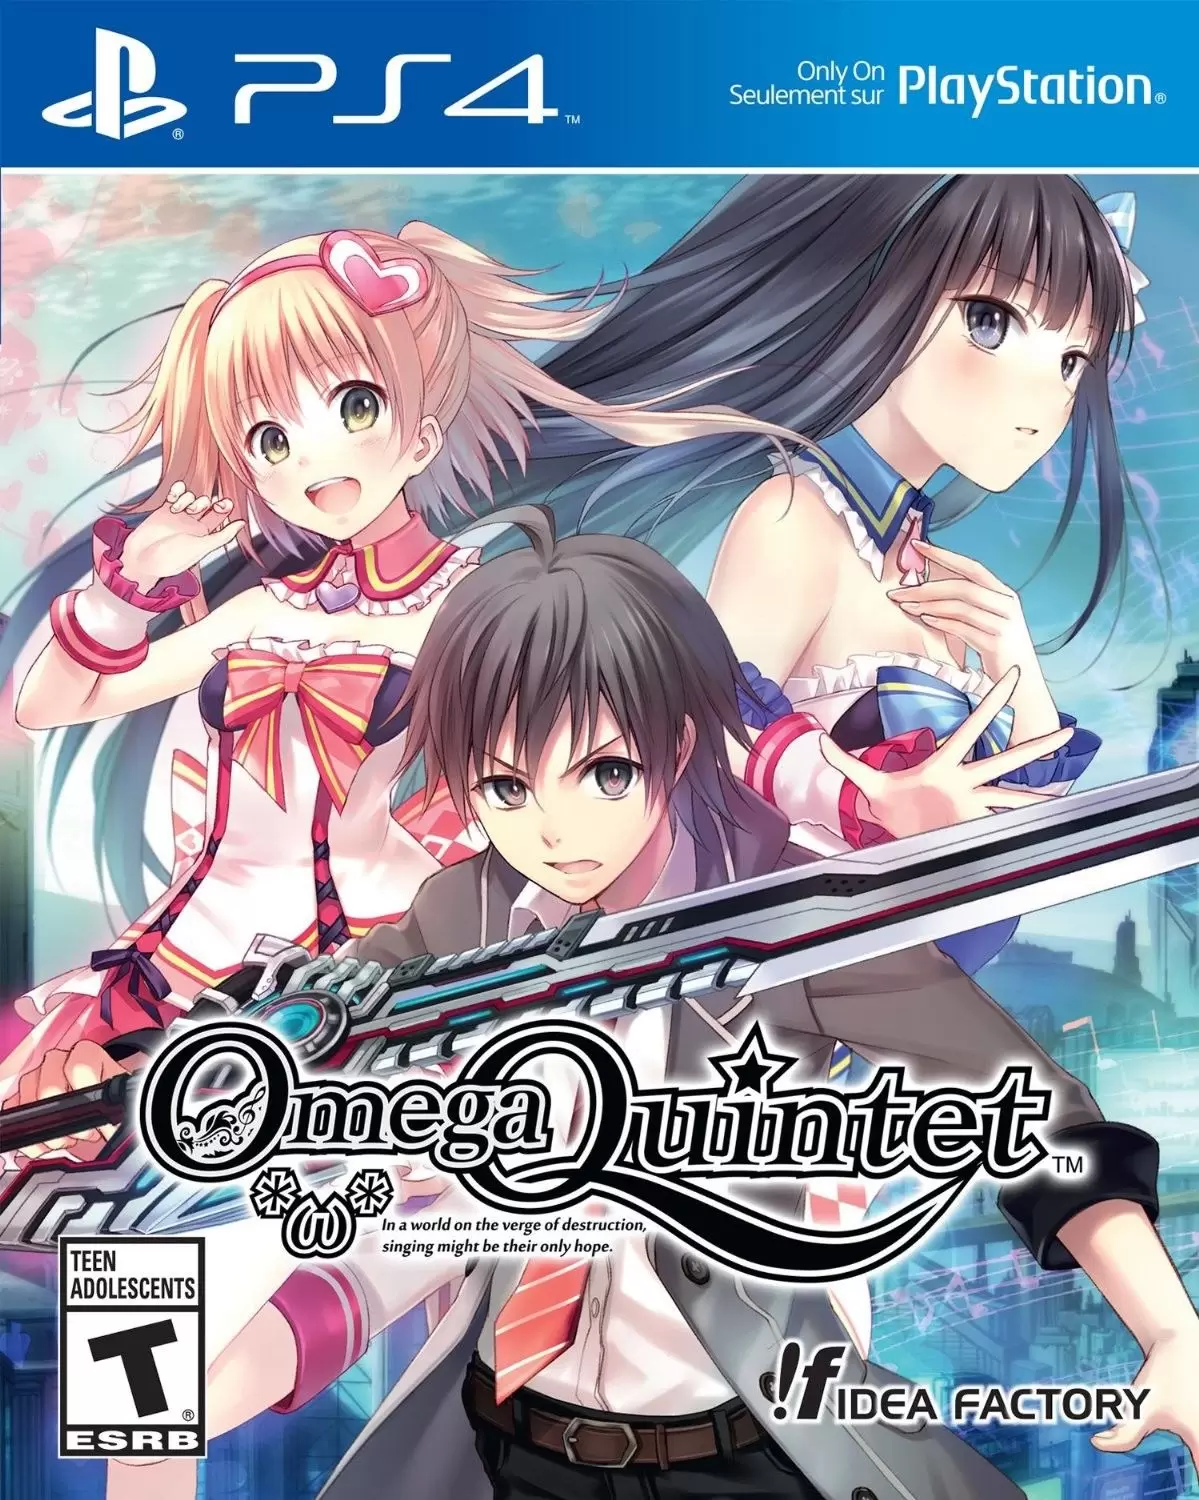 PS4 Games - Omega Quintet